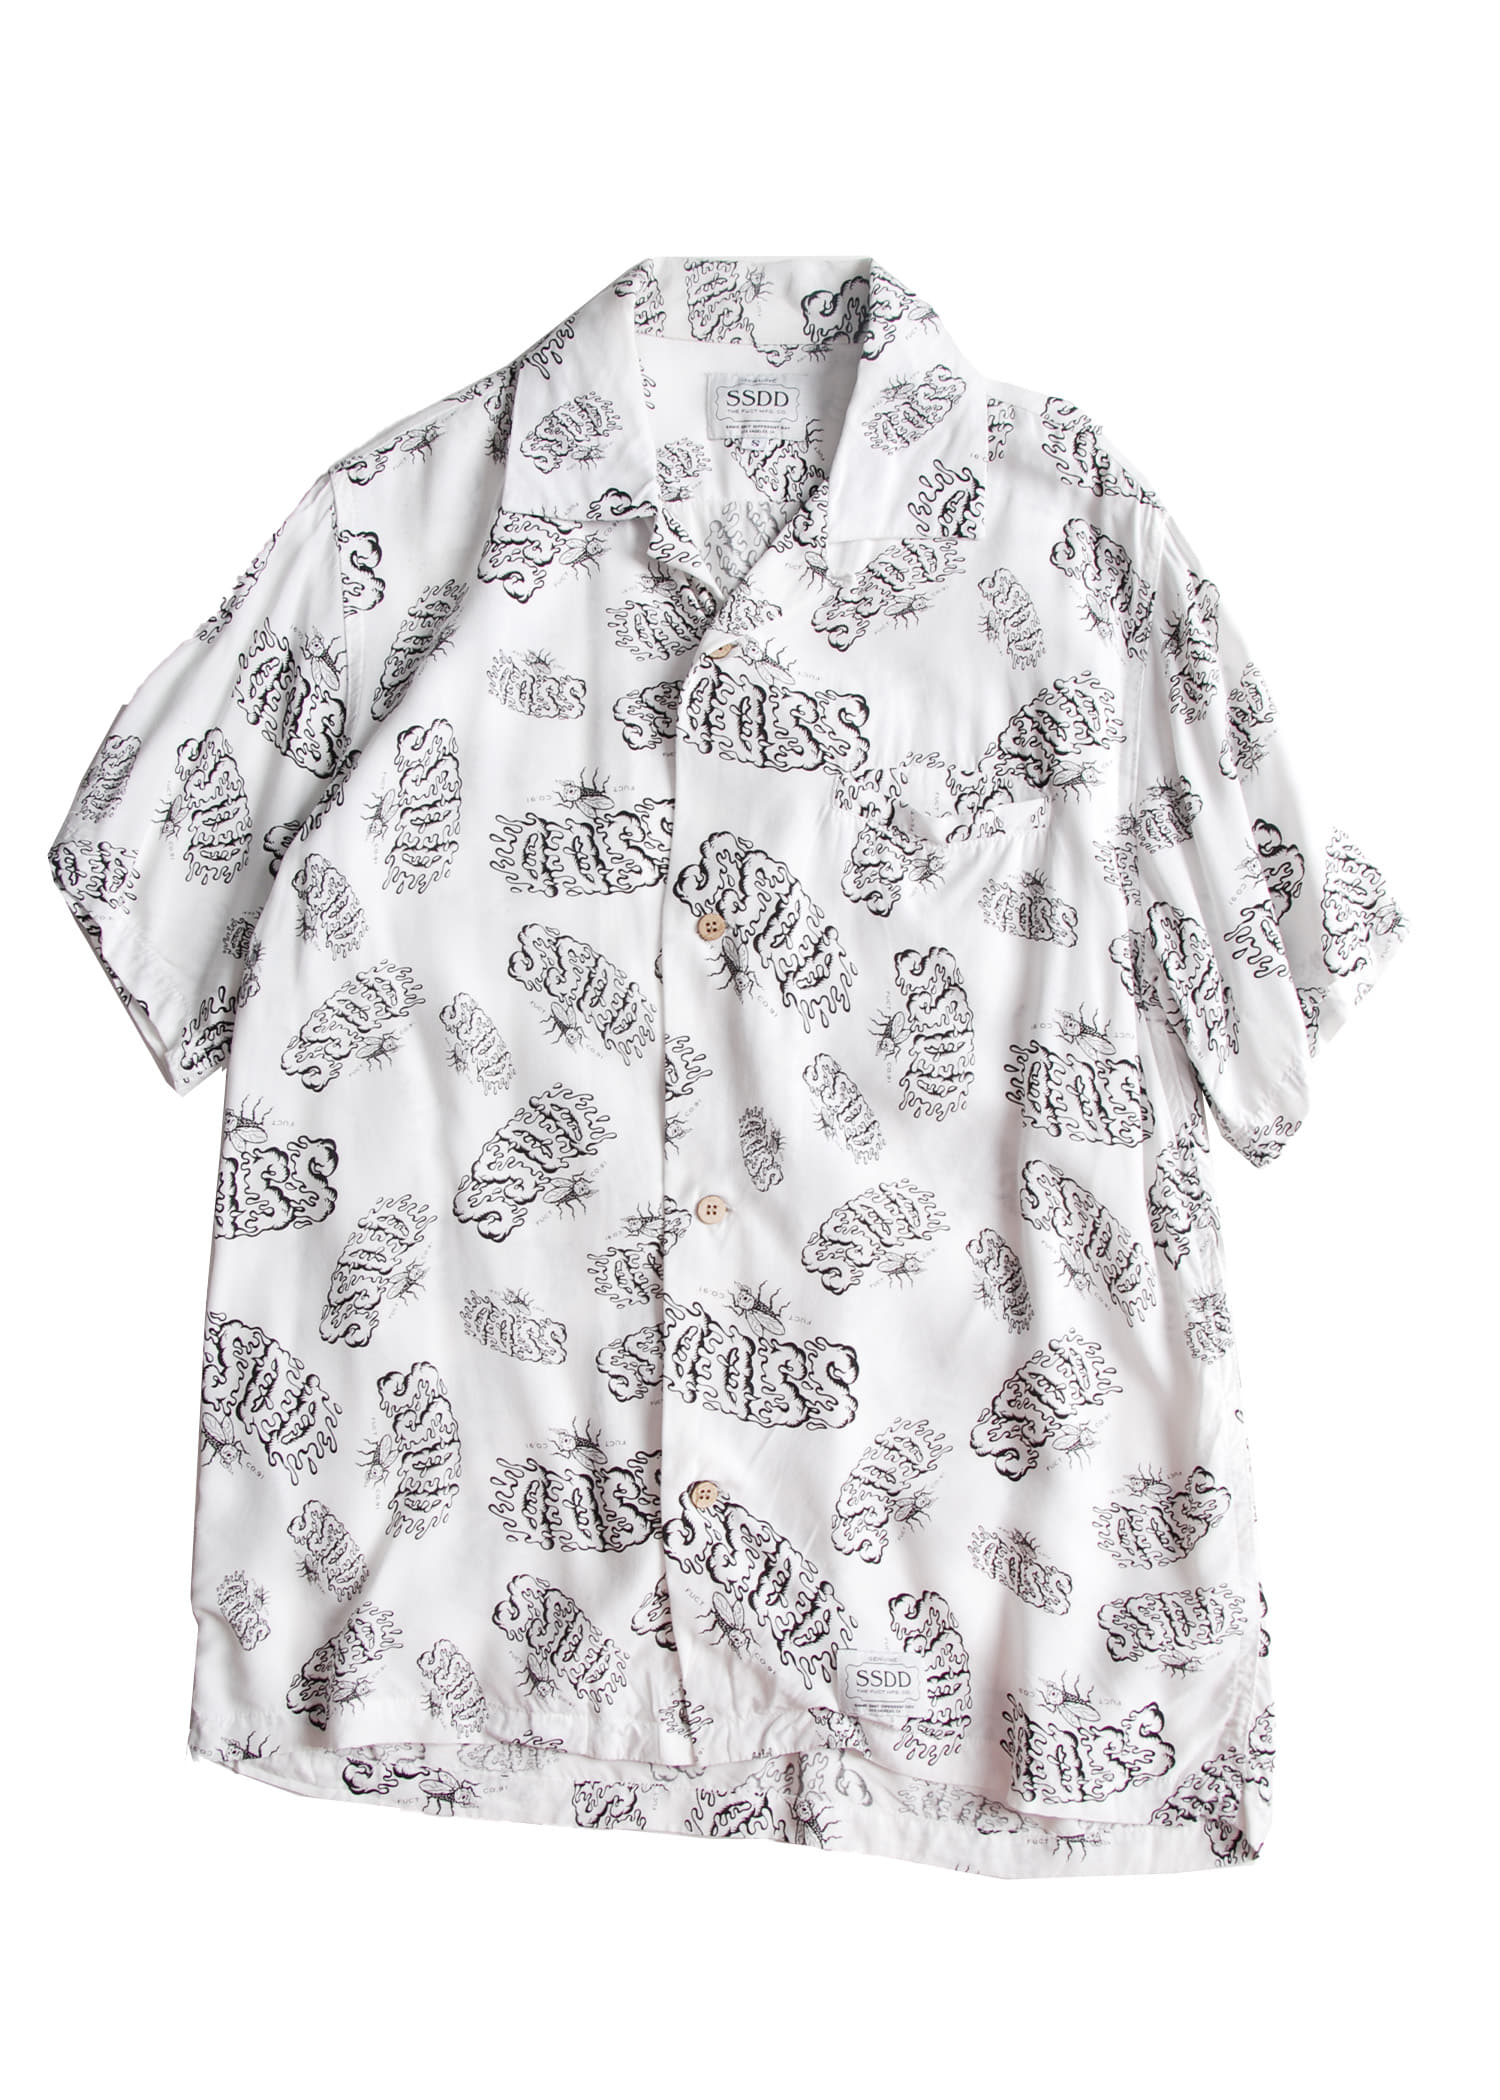 SSDD by FUCT aloha shirts